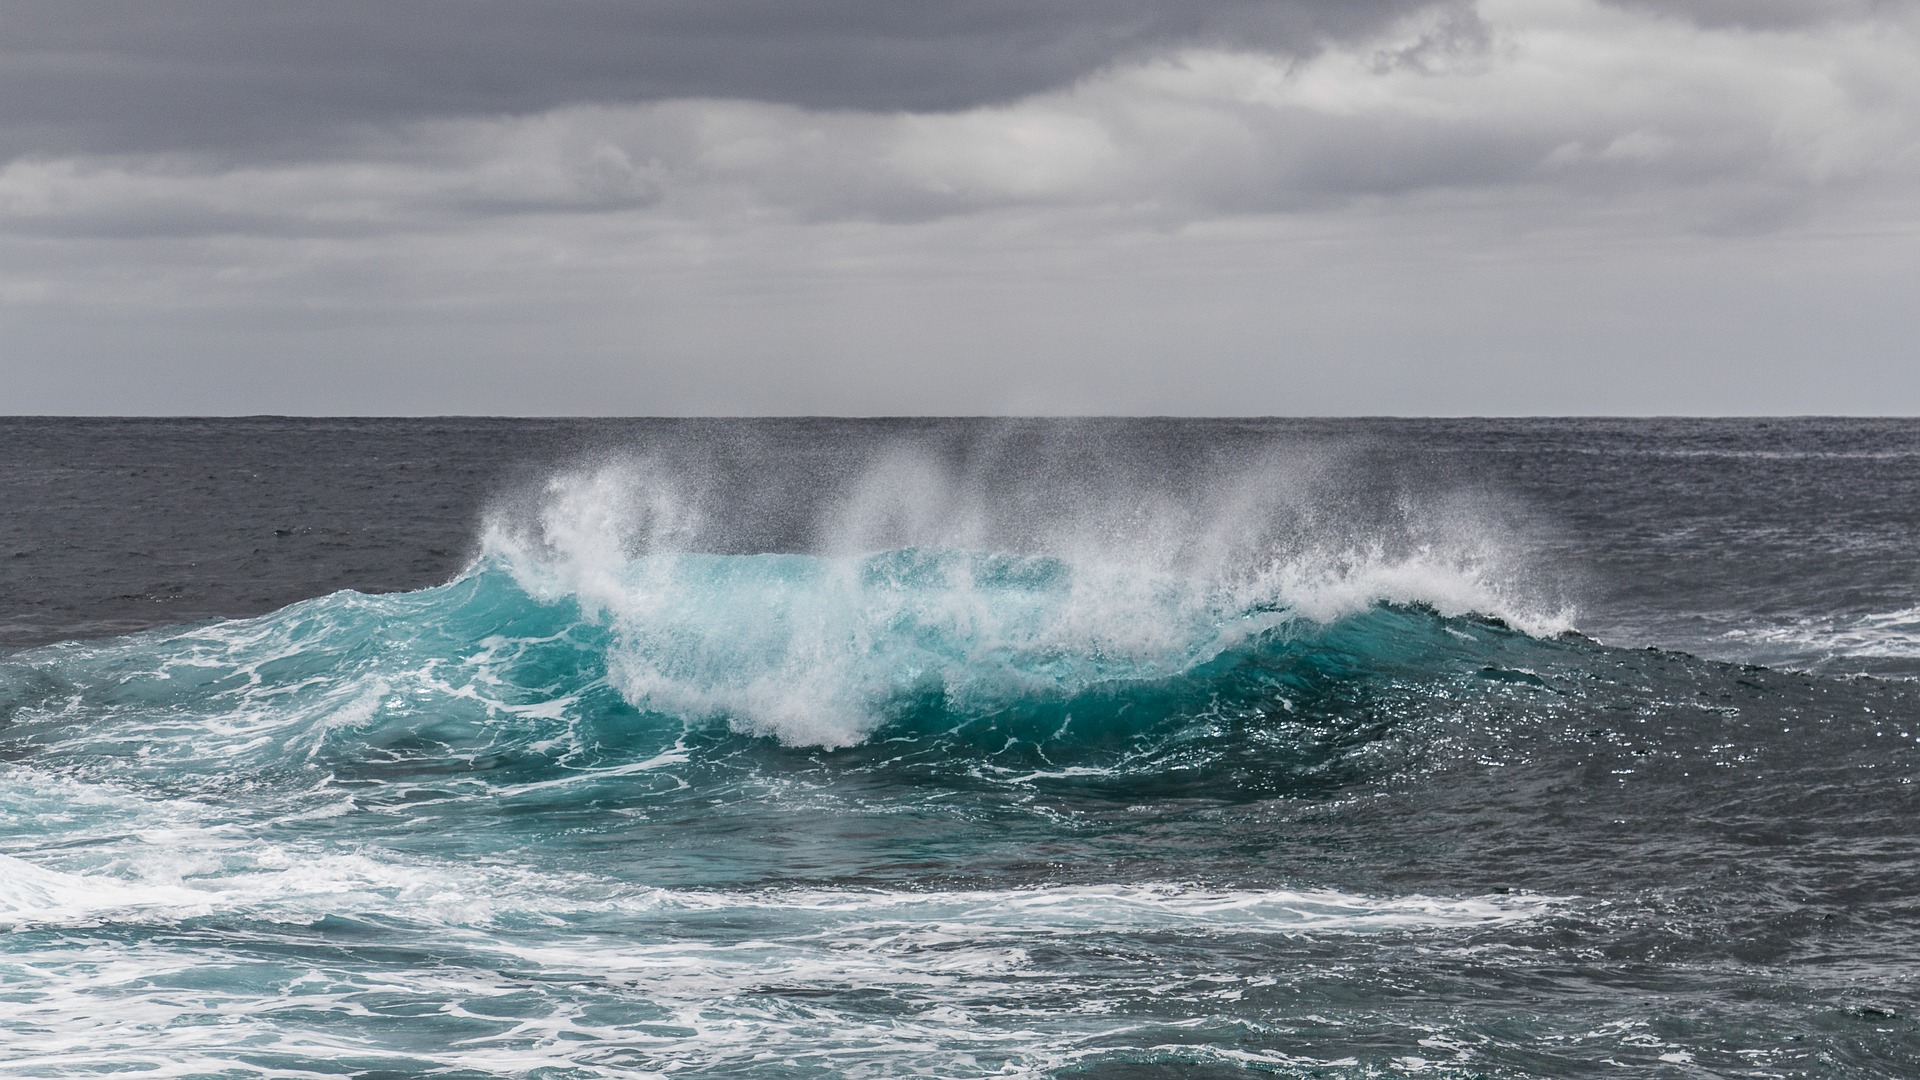 ΟΗΕ: Σε «κατάσταση έκτακτης ανάγκης» κηρύχτηκαν οι ωκεανοί